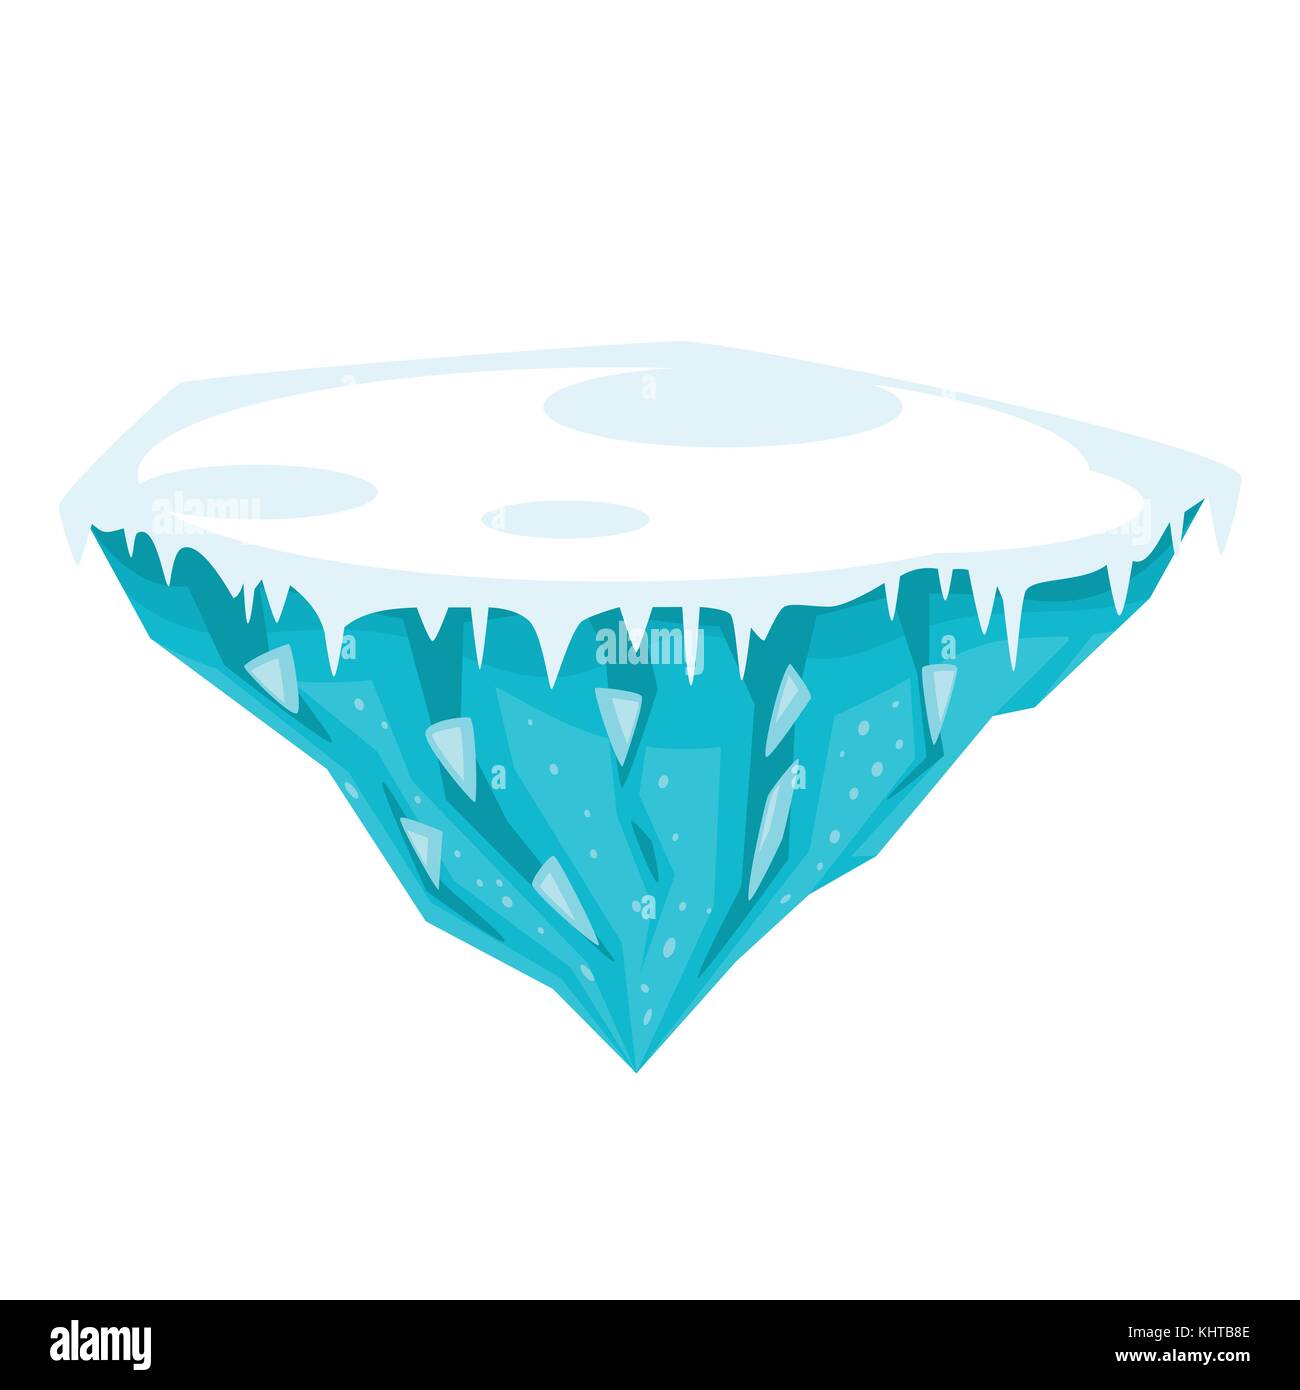 Vector cartoon illustration de jeu île de glace, isolé sur fond blanc. jeu utilisateur (GUI) pour les jeux vidéos, l'informatique ou web desig Illustration de Vecteur